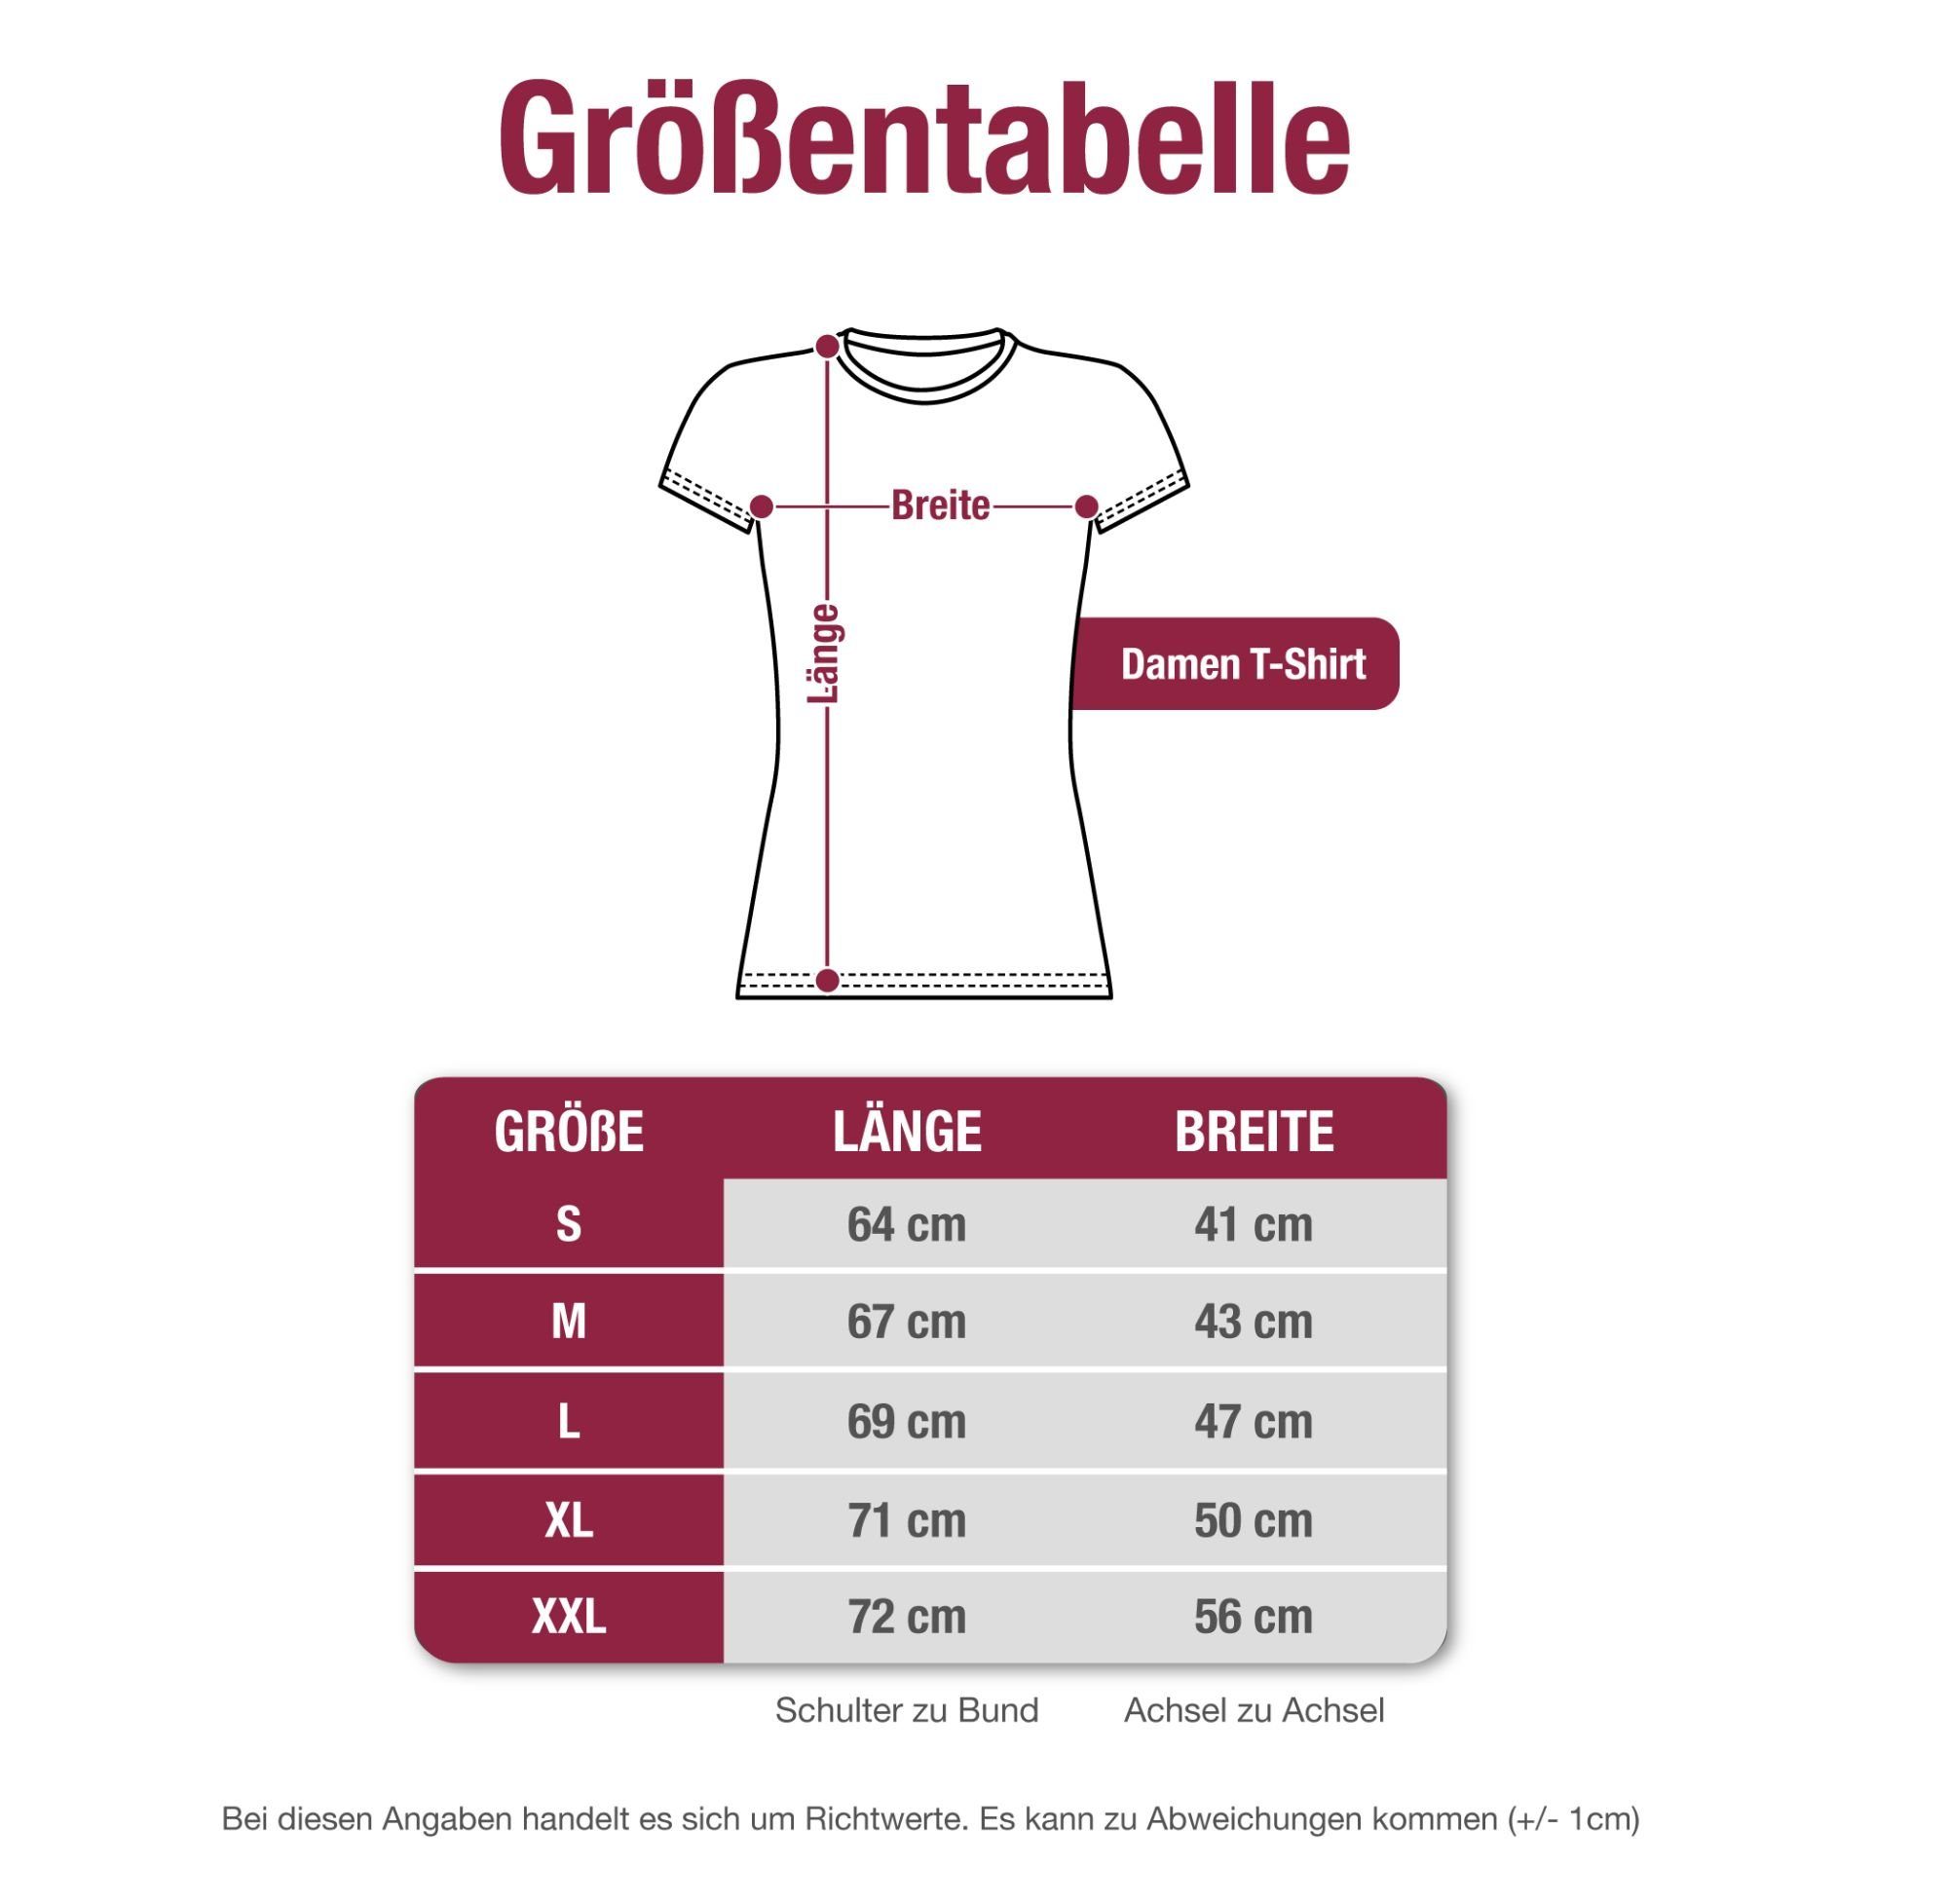 Damen Shirts Shirtracer T-Shirt Malle is' nur einmal im Jahr Bier - Urlaub - Damen Premium T-Shirt (1-tlg) mit Print, Druck, Sym